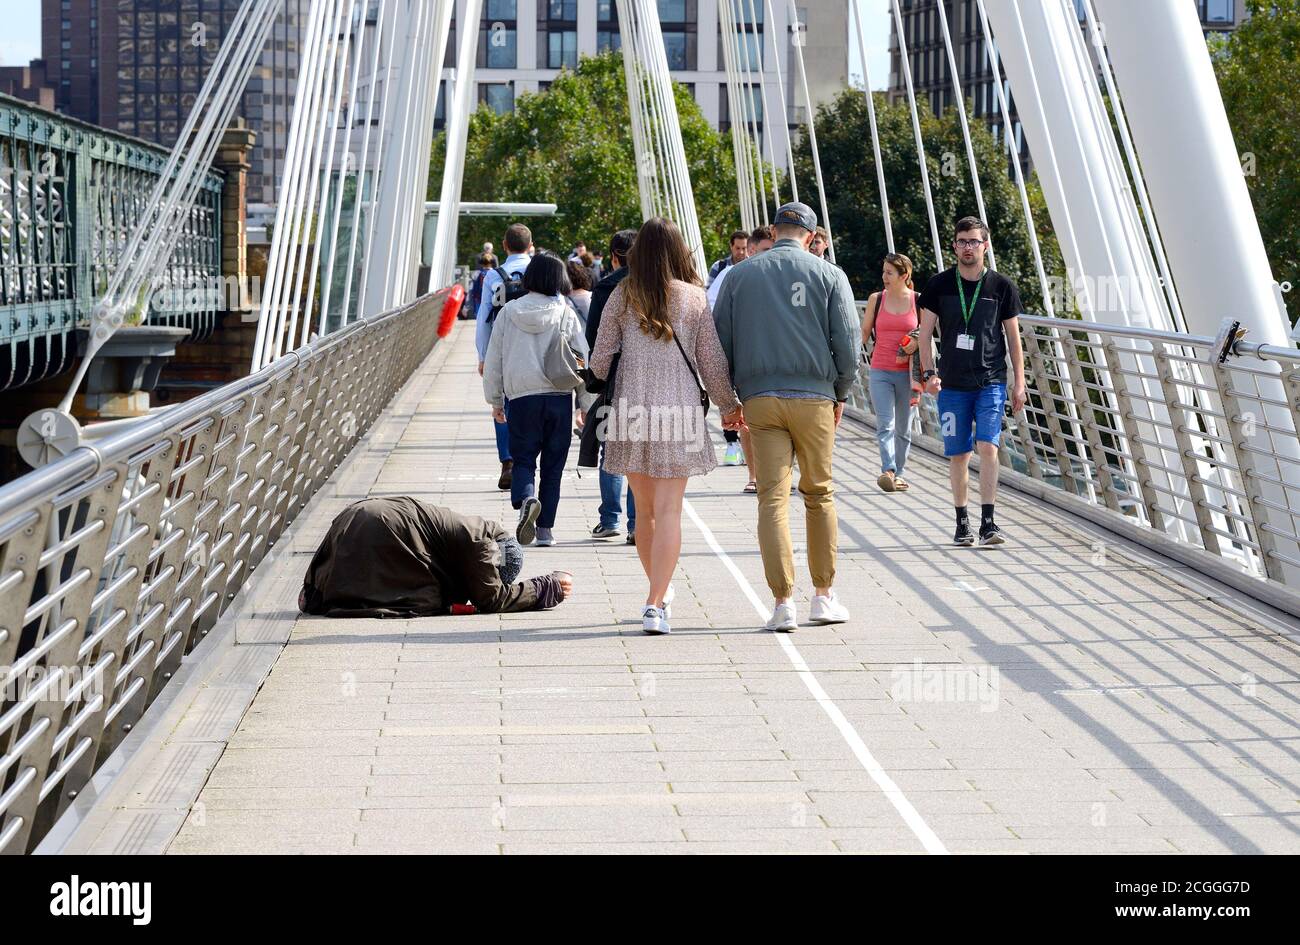 London, England, UK. Homeless woman begging on the Golden Jubilee Bridge across the Thames Stock Photo